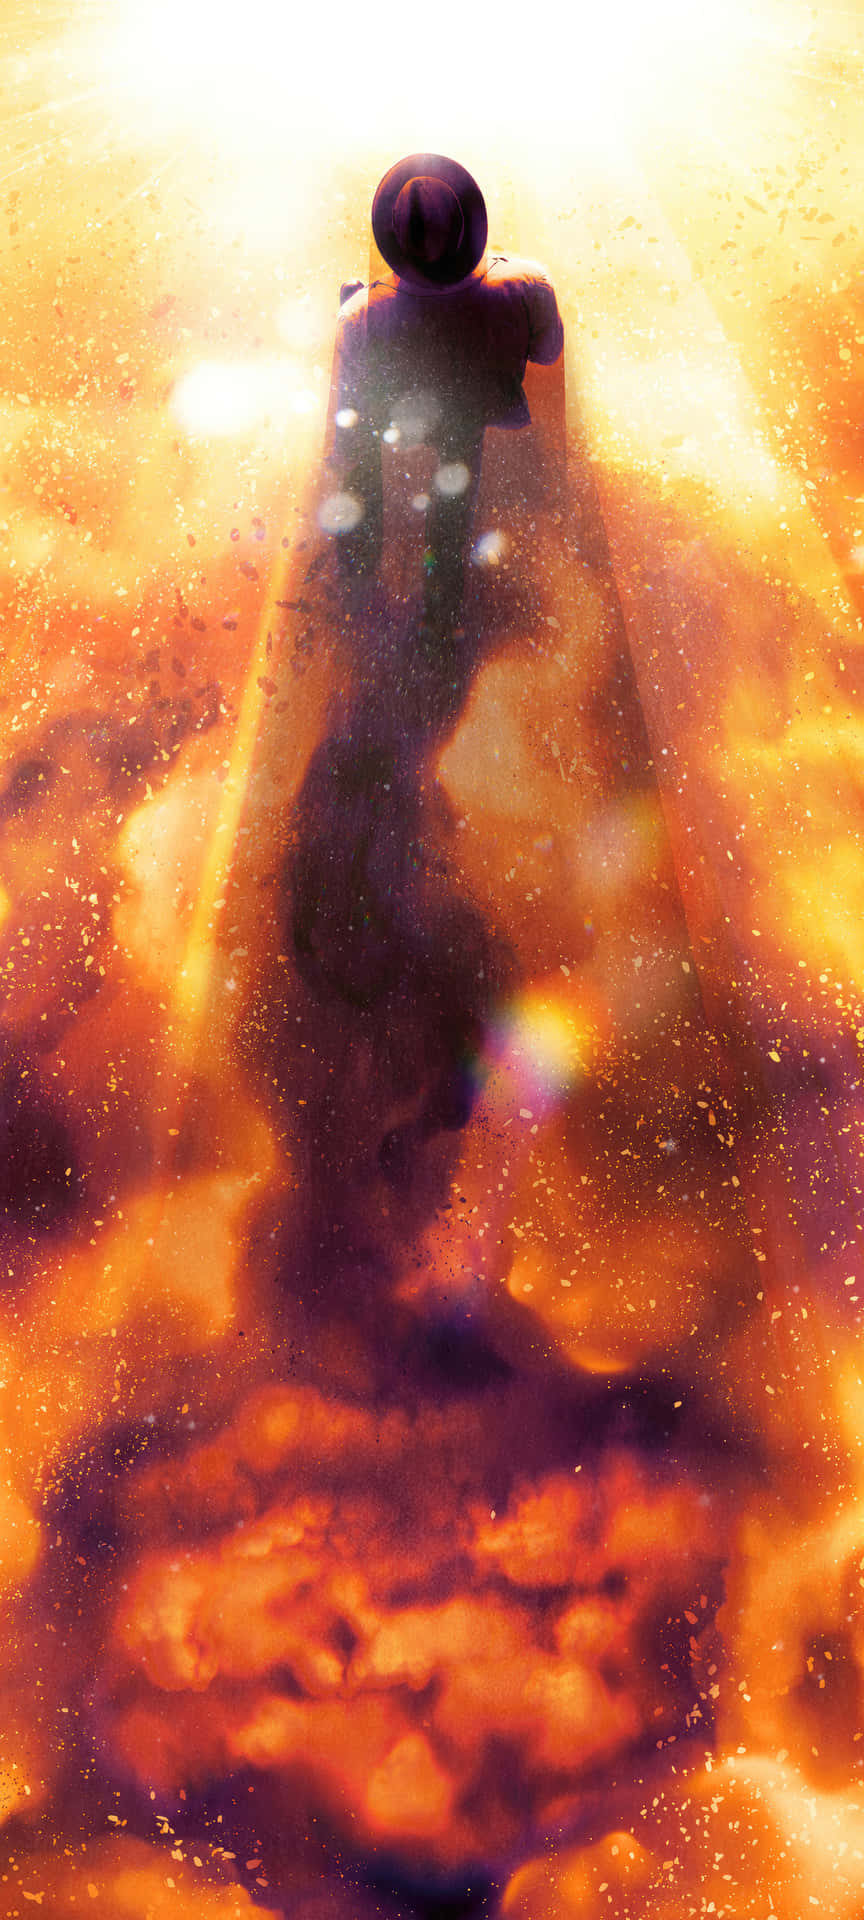 Mystical Fire Explosion Art Wallpaper